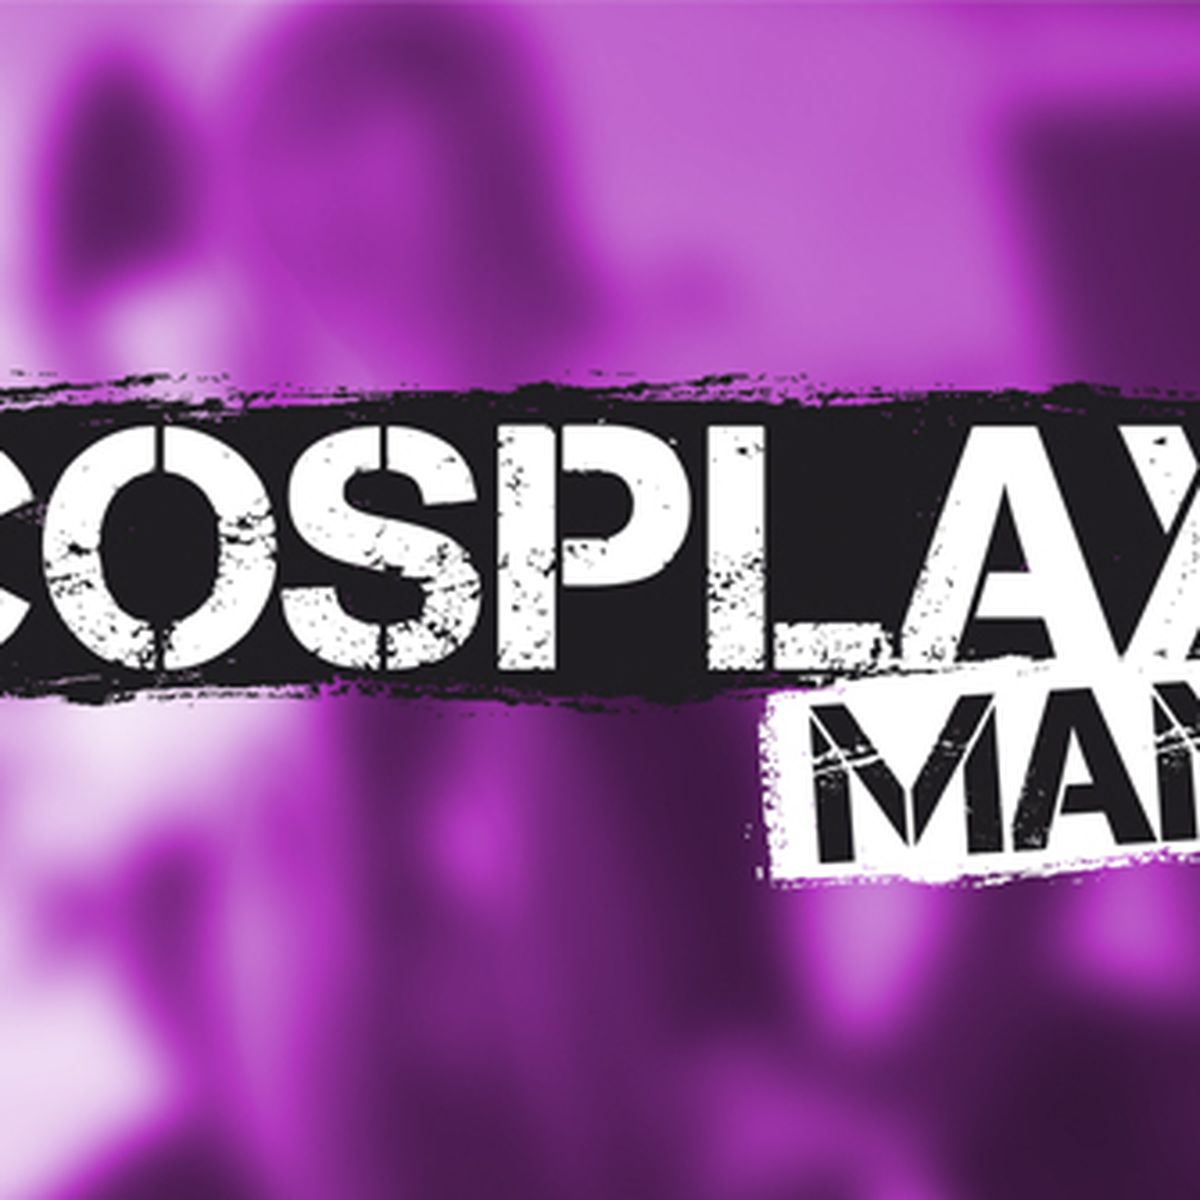 Cosplay Manía: ¡El documental de cosplay definitivo, en Madrid